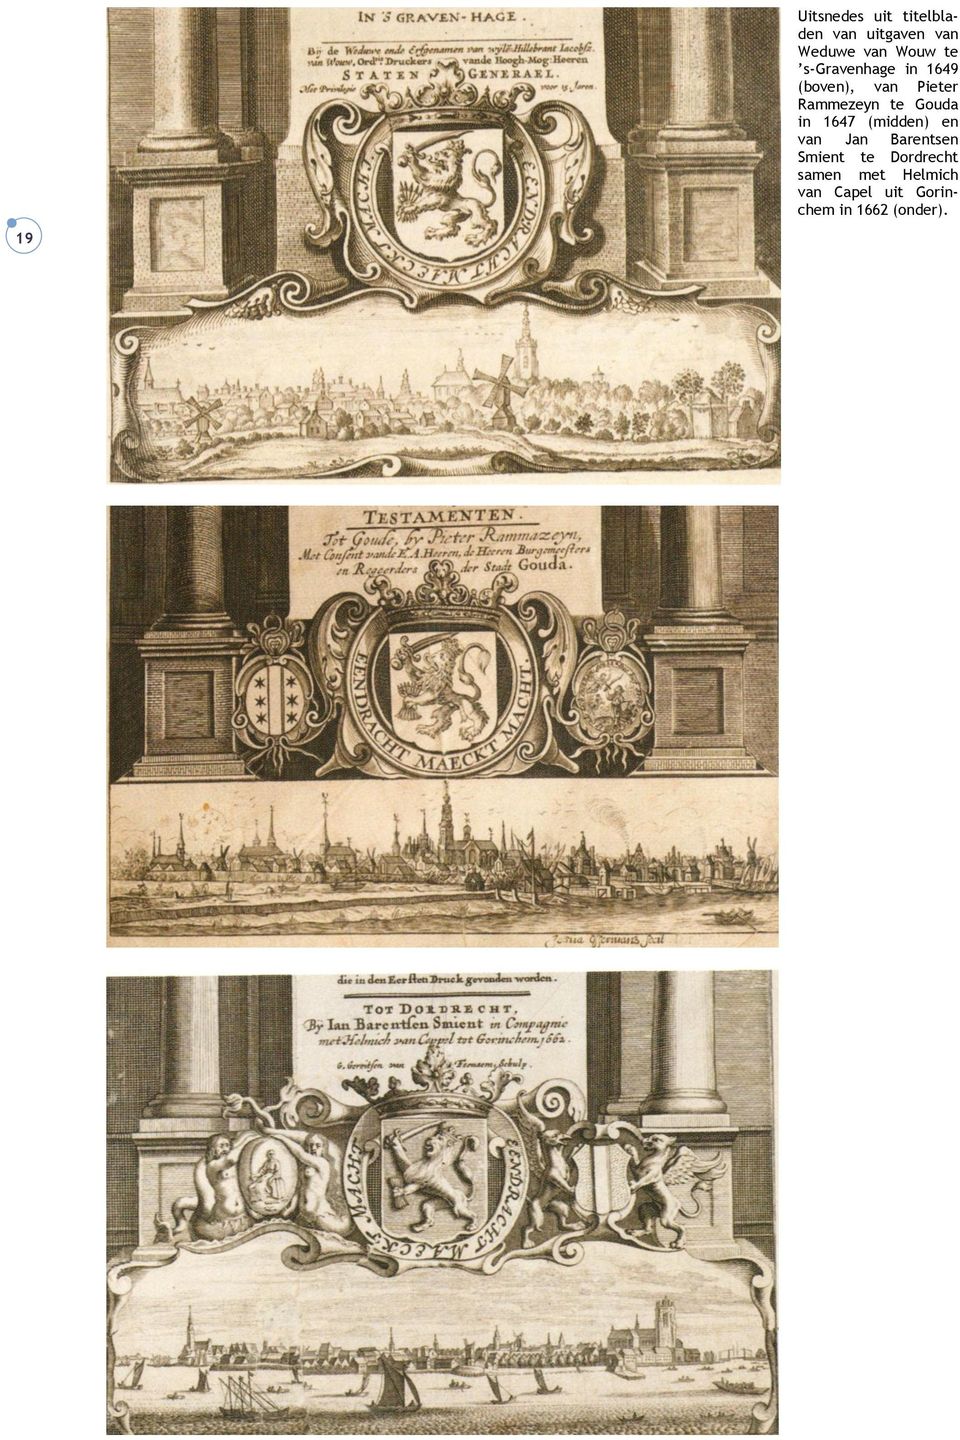 te Gouda in 1647 (midden) en van Jan Barentsen Smient te